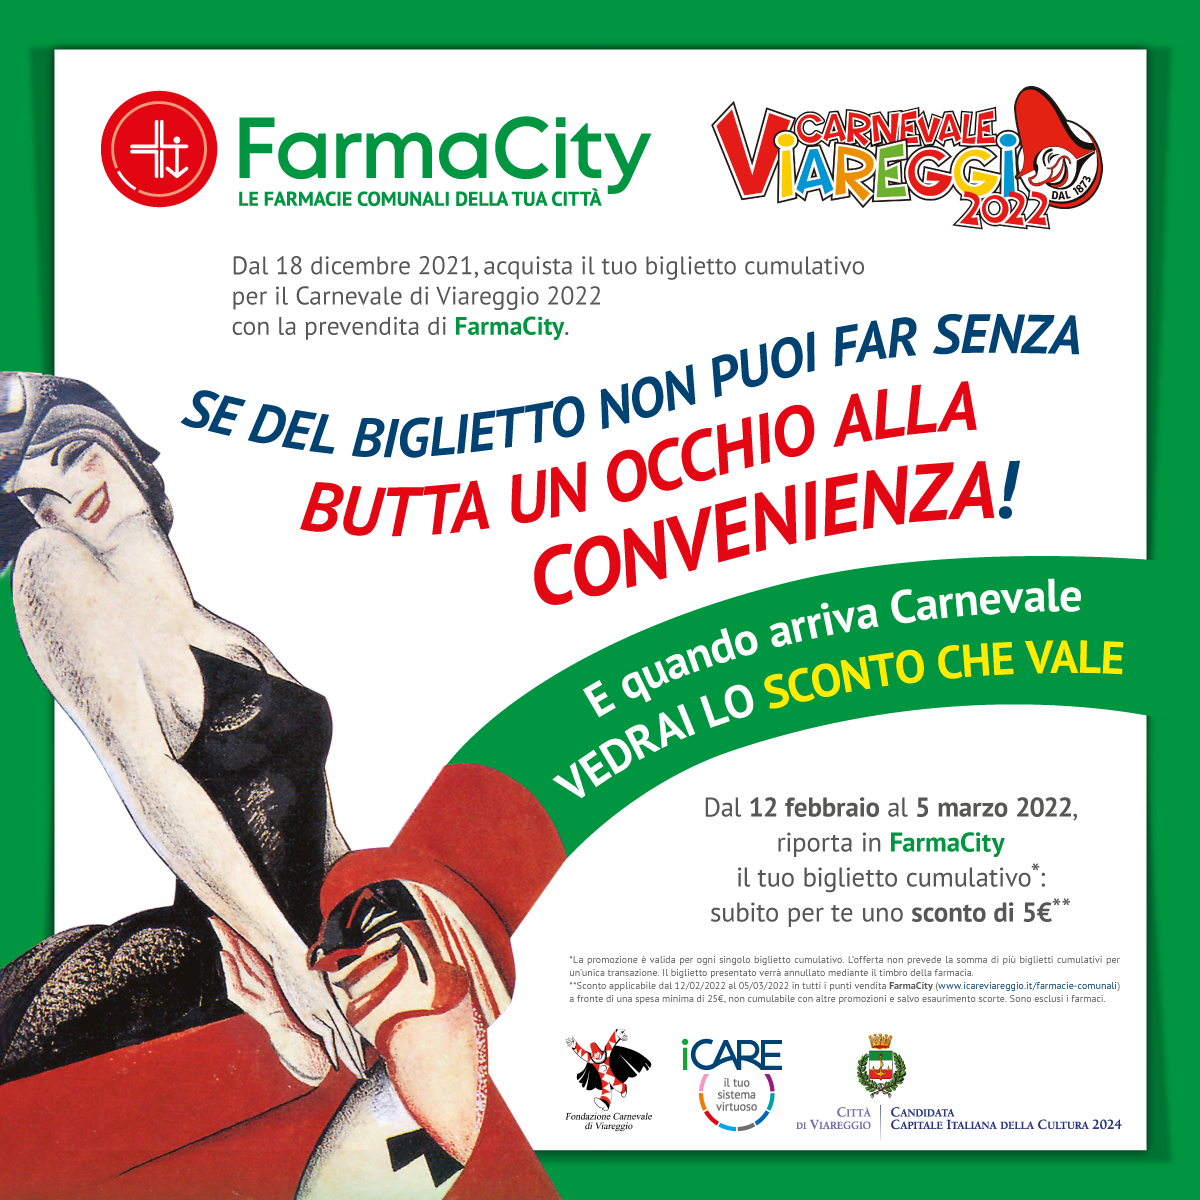 Promozione FarmaCity per il Carnevale di Viareggio